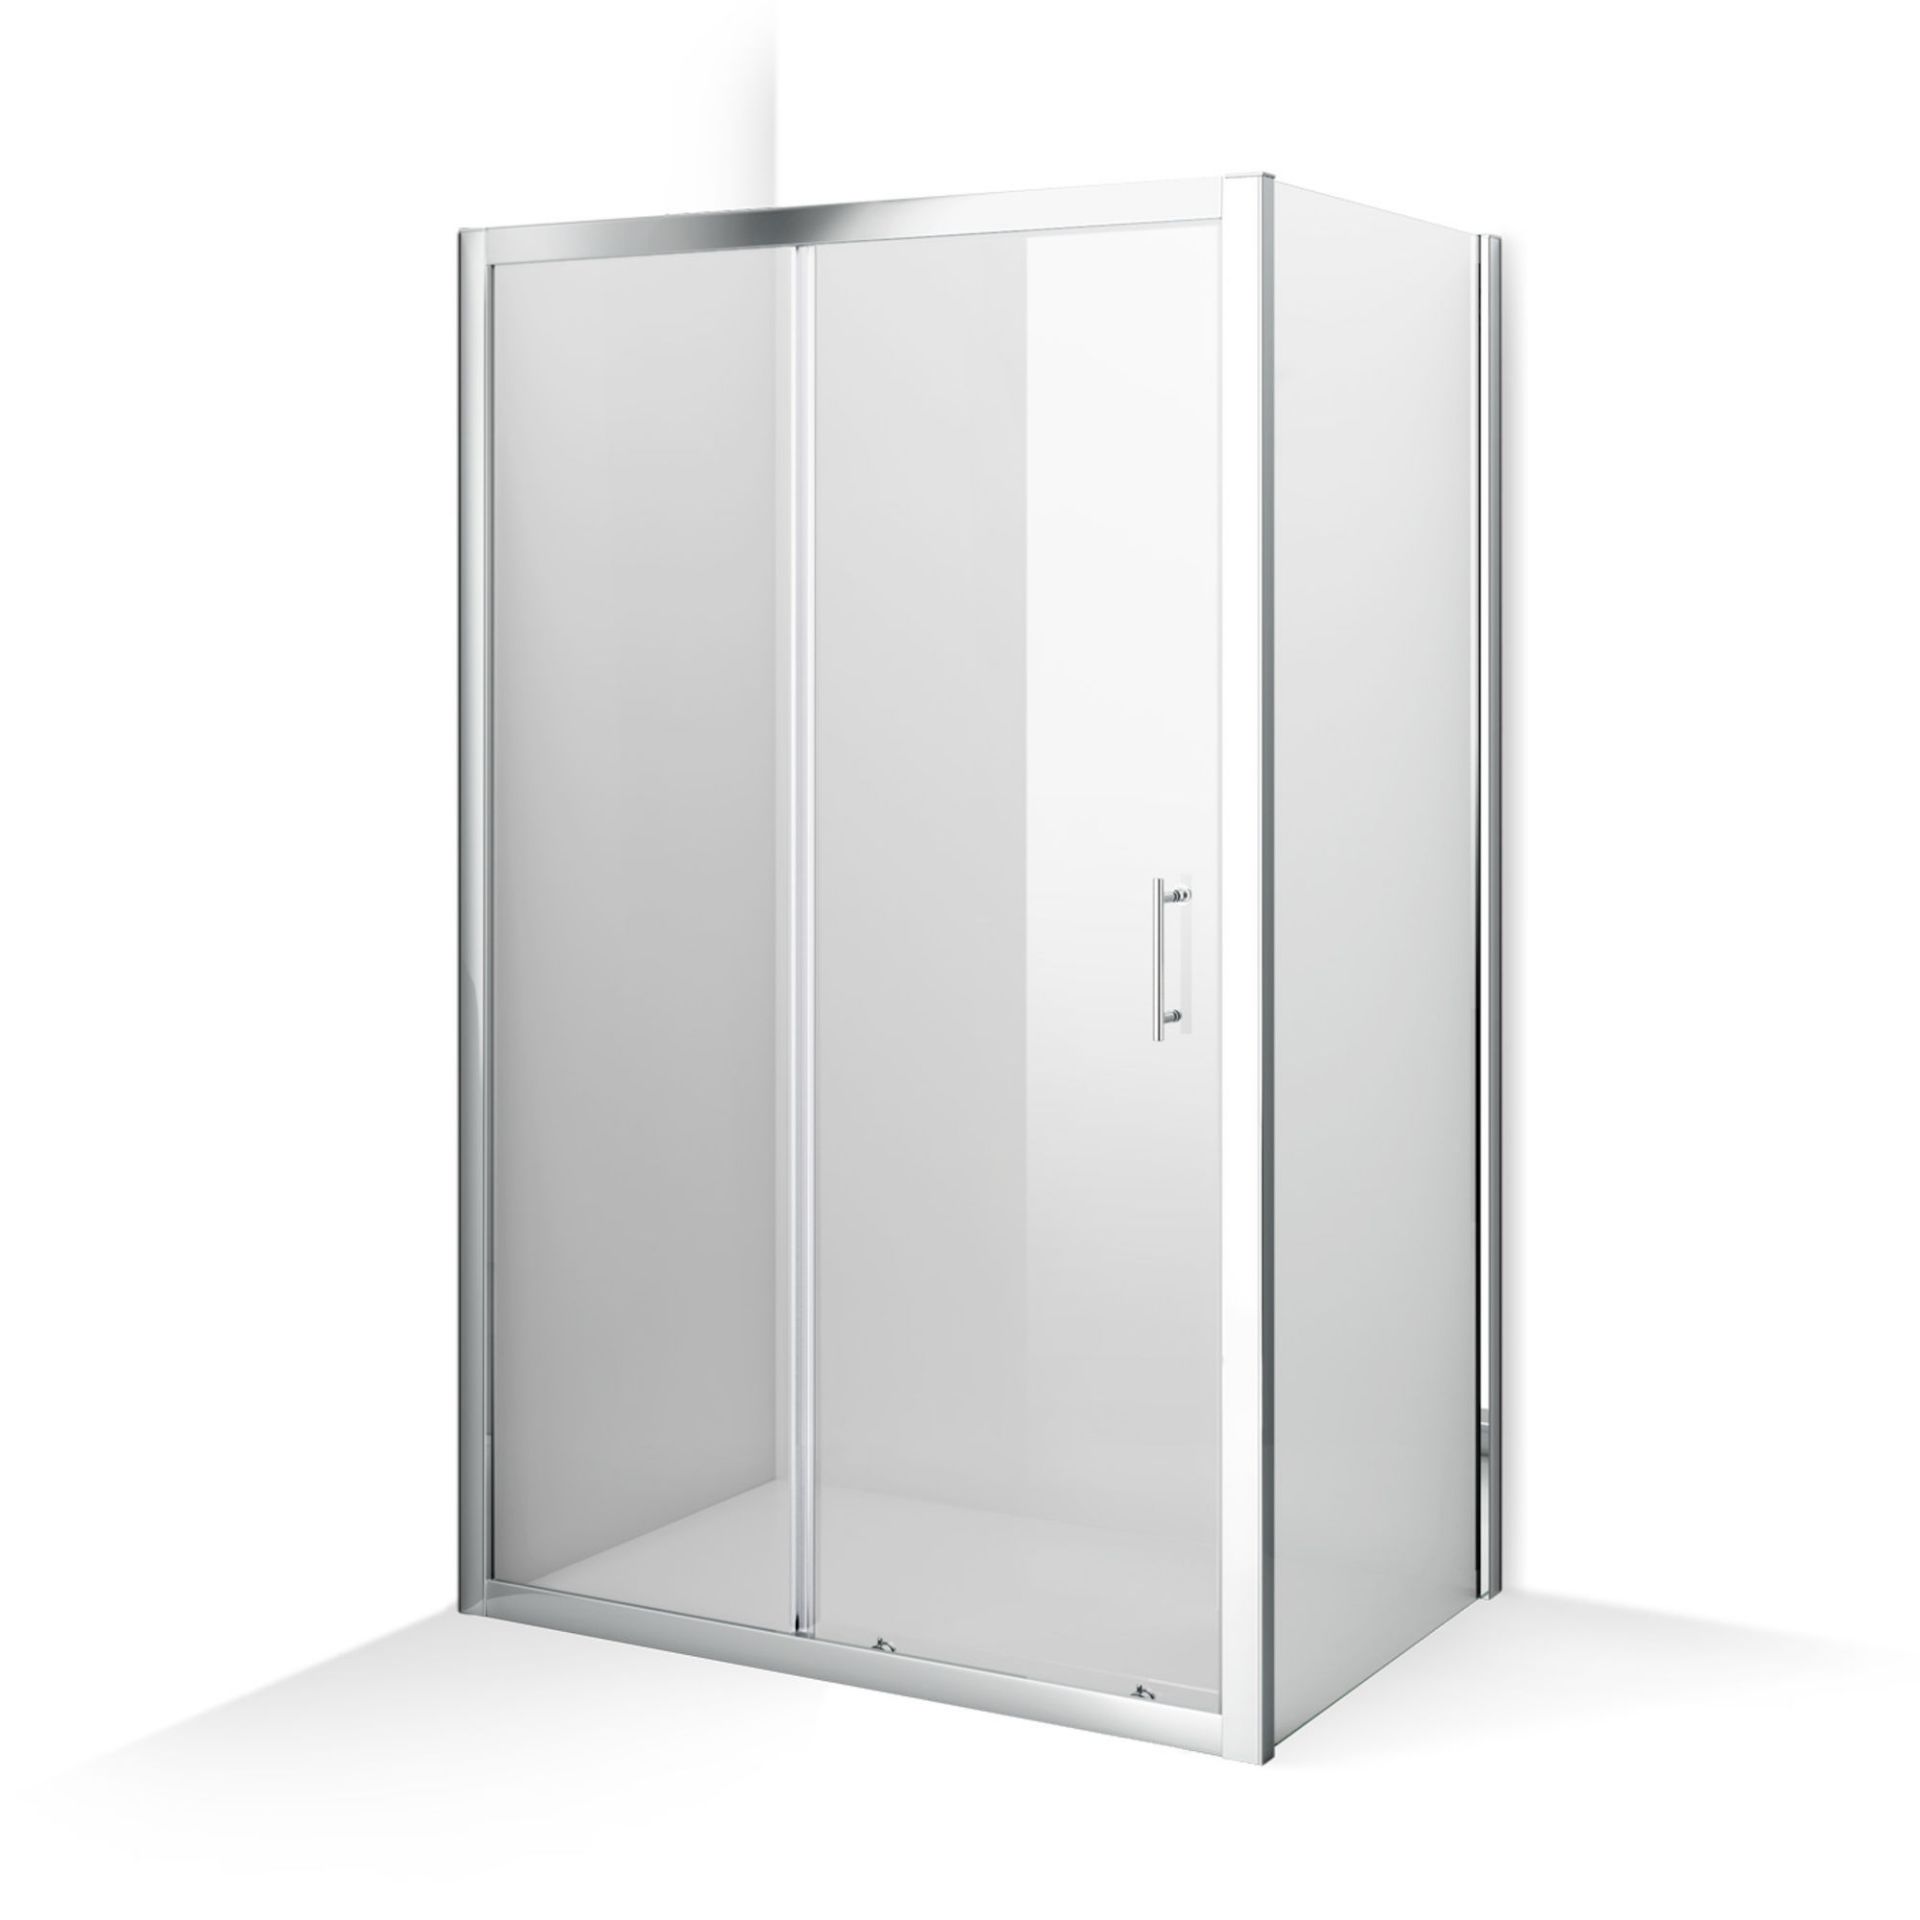 (KL136) 1100x760mm - 6mm - Elements Sliding Door Shower Enclosure. RRP £549.99. 6mm Safety Glass - Image 5 of 5